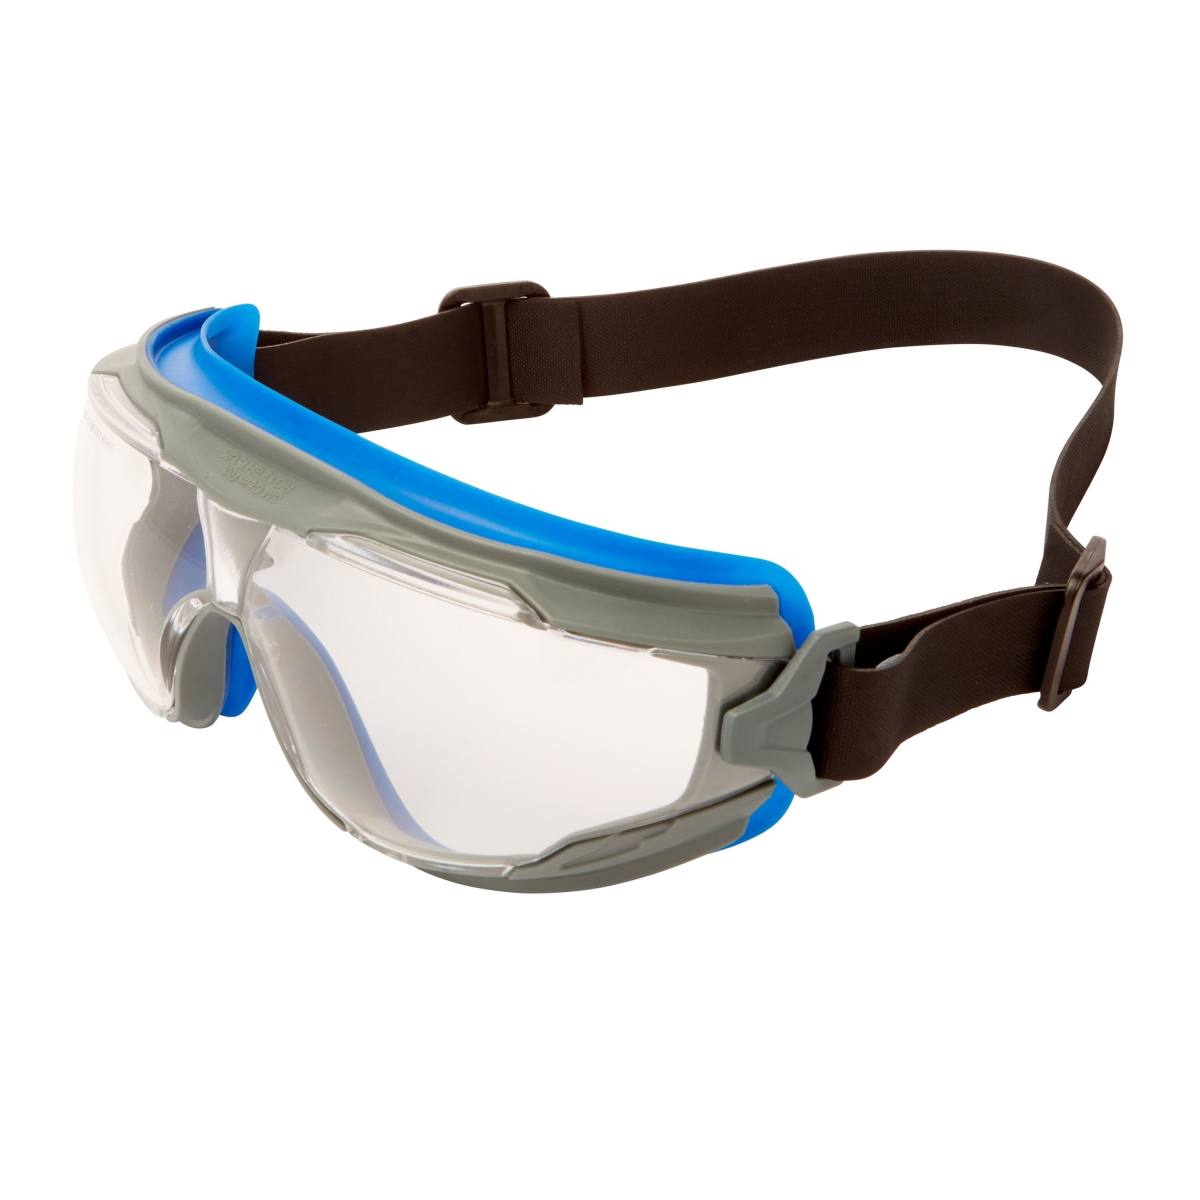 3M GoggleGear 500 full-vision bril GG501NSGAF-BLU, autoclaveerbaar, blauwgrijs montuur, zwarte neopreen hoofdband, heldere lens